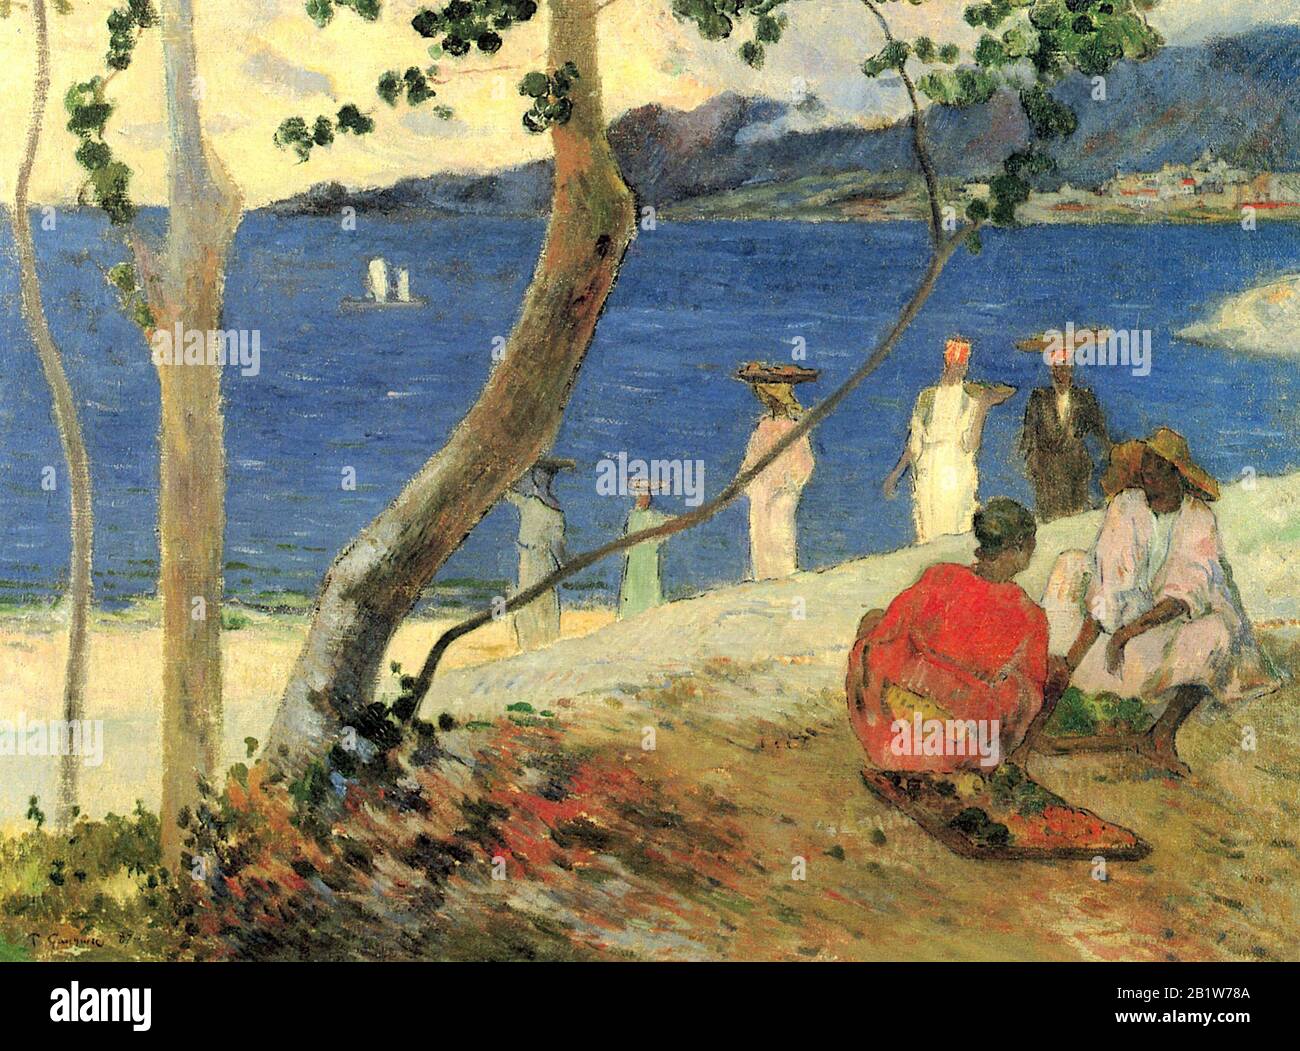 Obstträger in der Bucht von Turin oder am Meer (1887) Gemälde aus dem 19. Jahrhundert von Paul Gauguin - sehr hohe Auflösung und Qualitätsbild Stockfoto